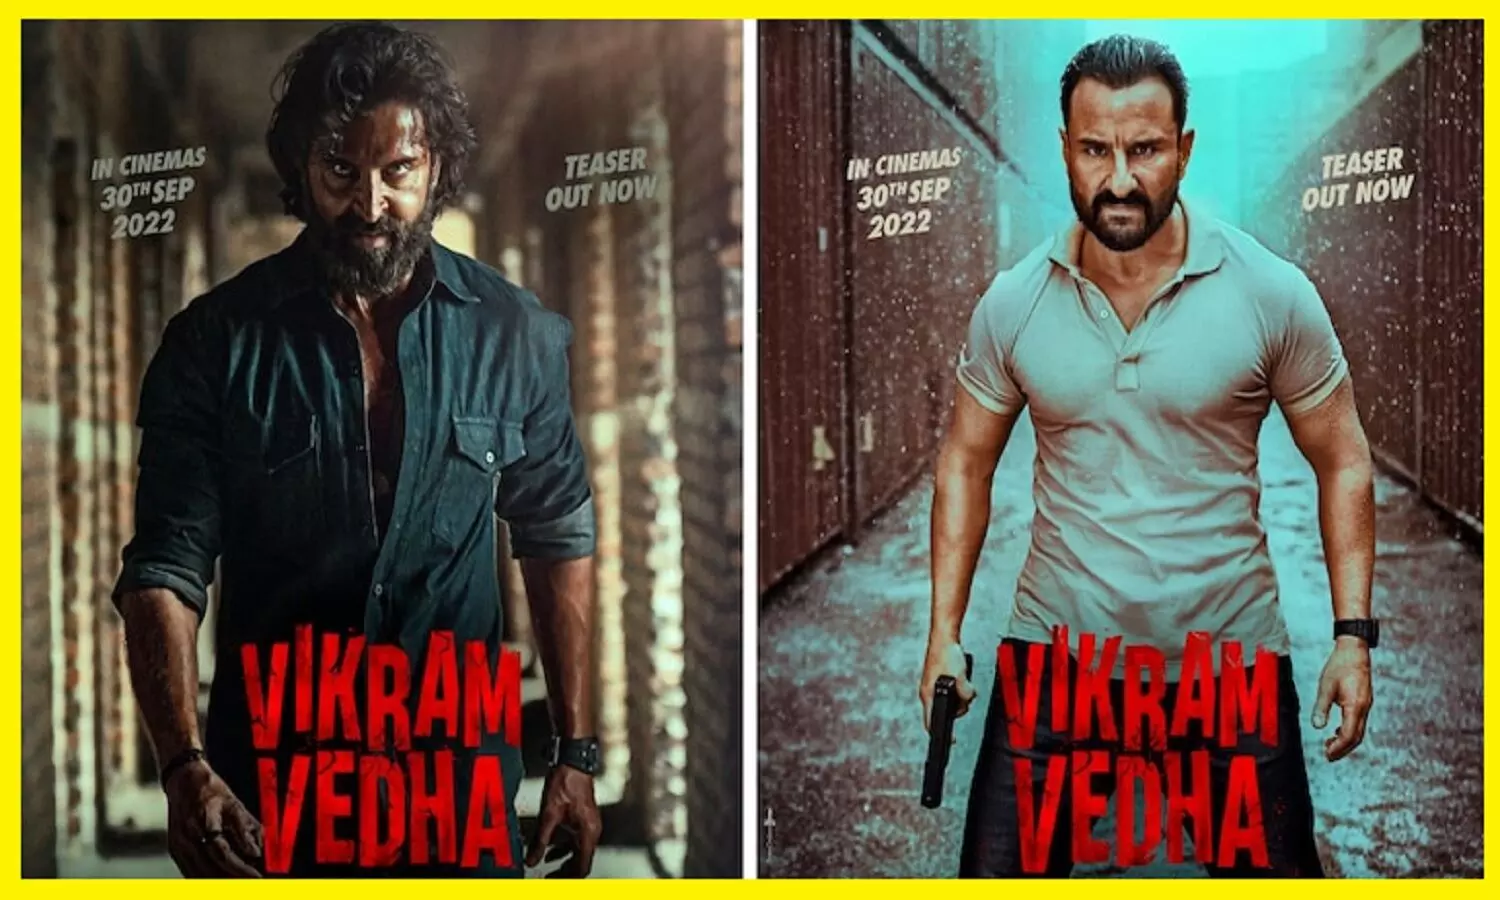 Vikram Vedha Teaser Review: विक्रम वेधा का टीजर आउट, Hrithik Roshan की दमदार एक्टिंग ने लोगों को दीवाना बना दिया